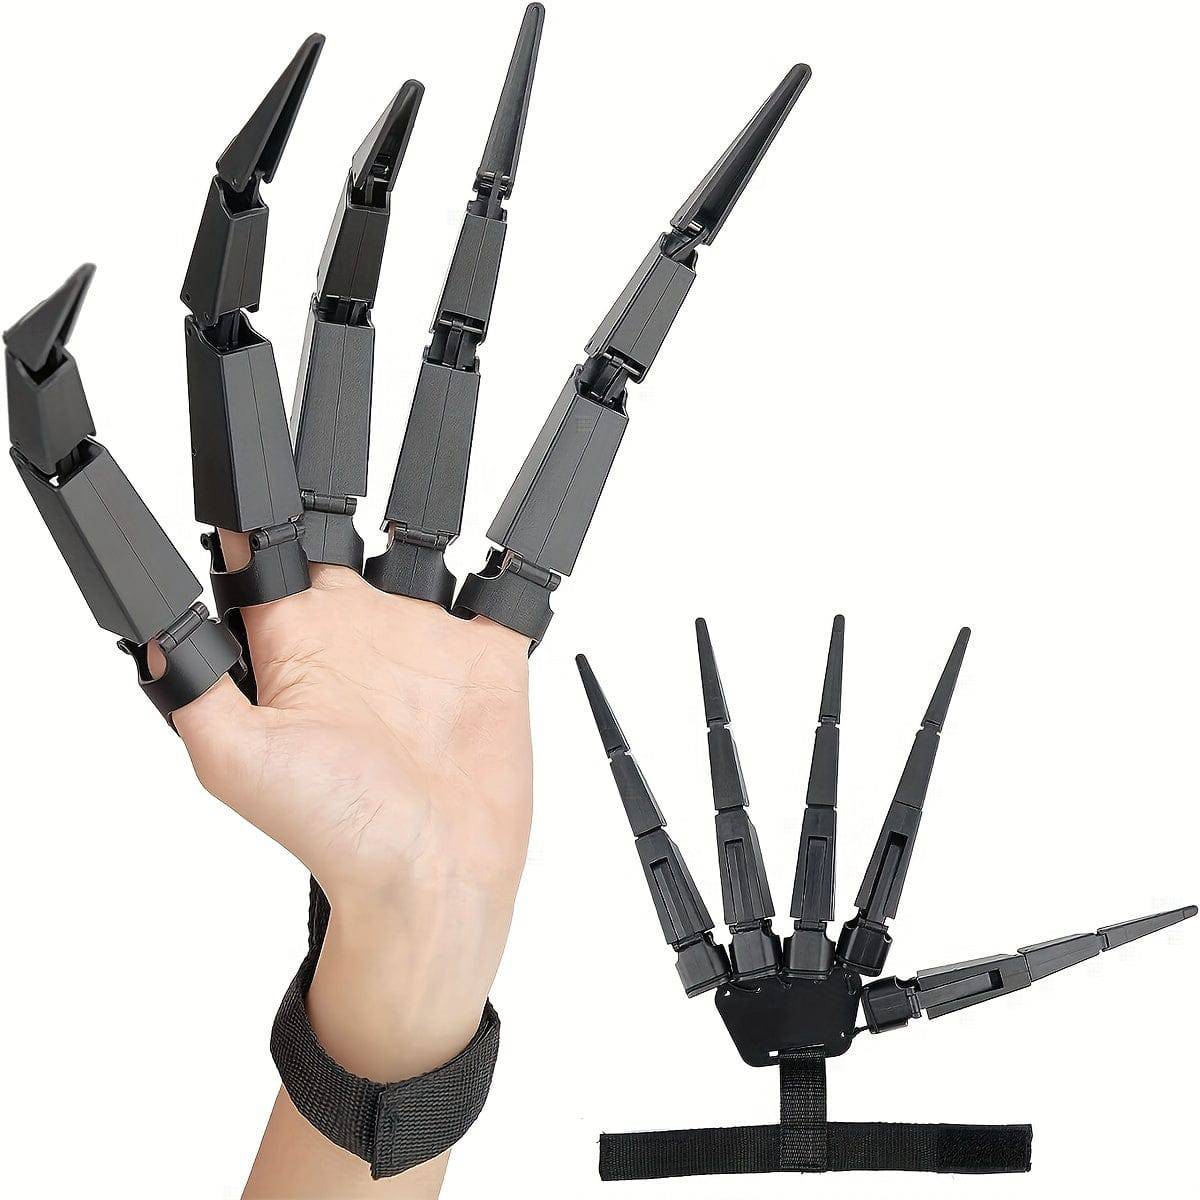 Gruselige 3D-gedruckte Finger für Halloween-Cosplay